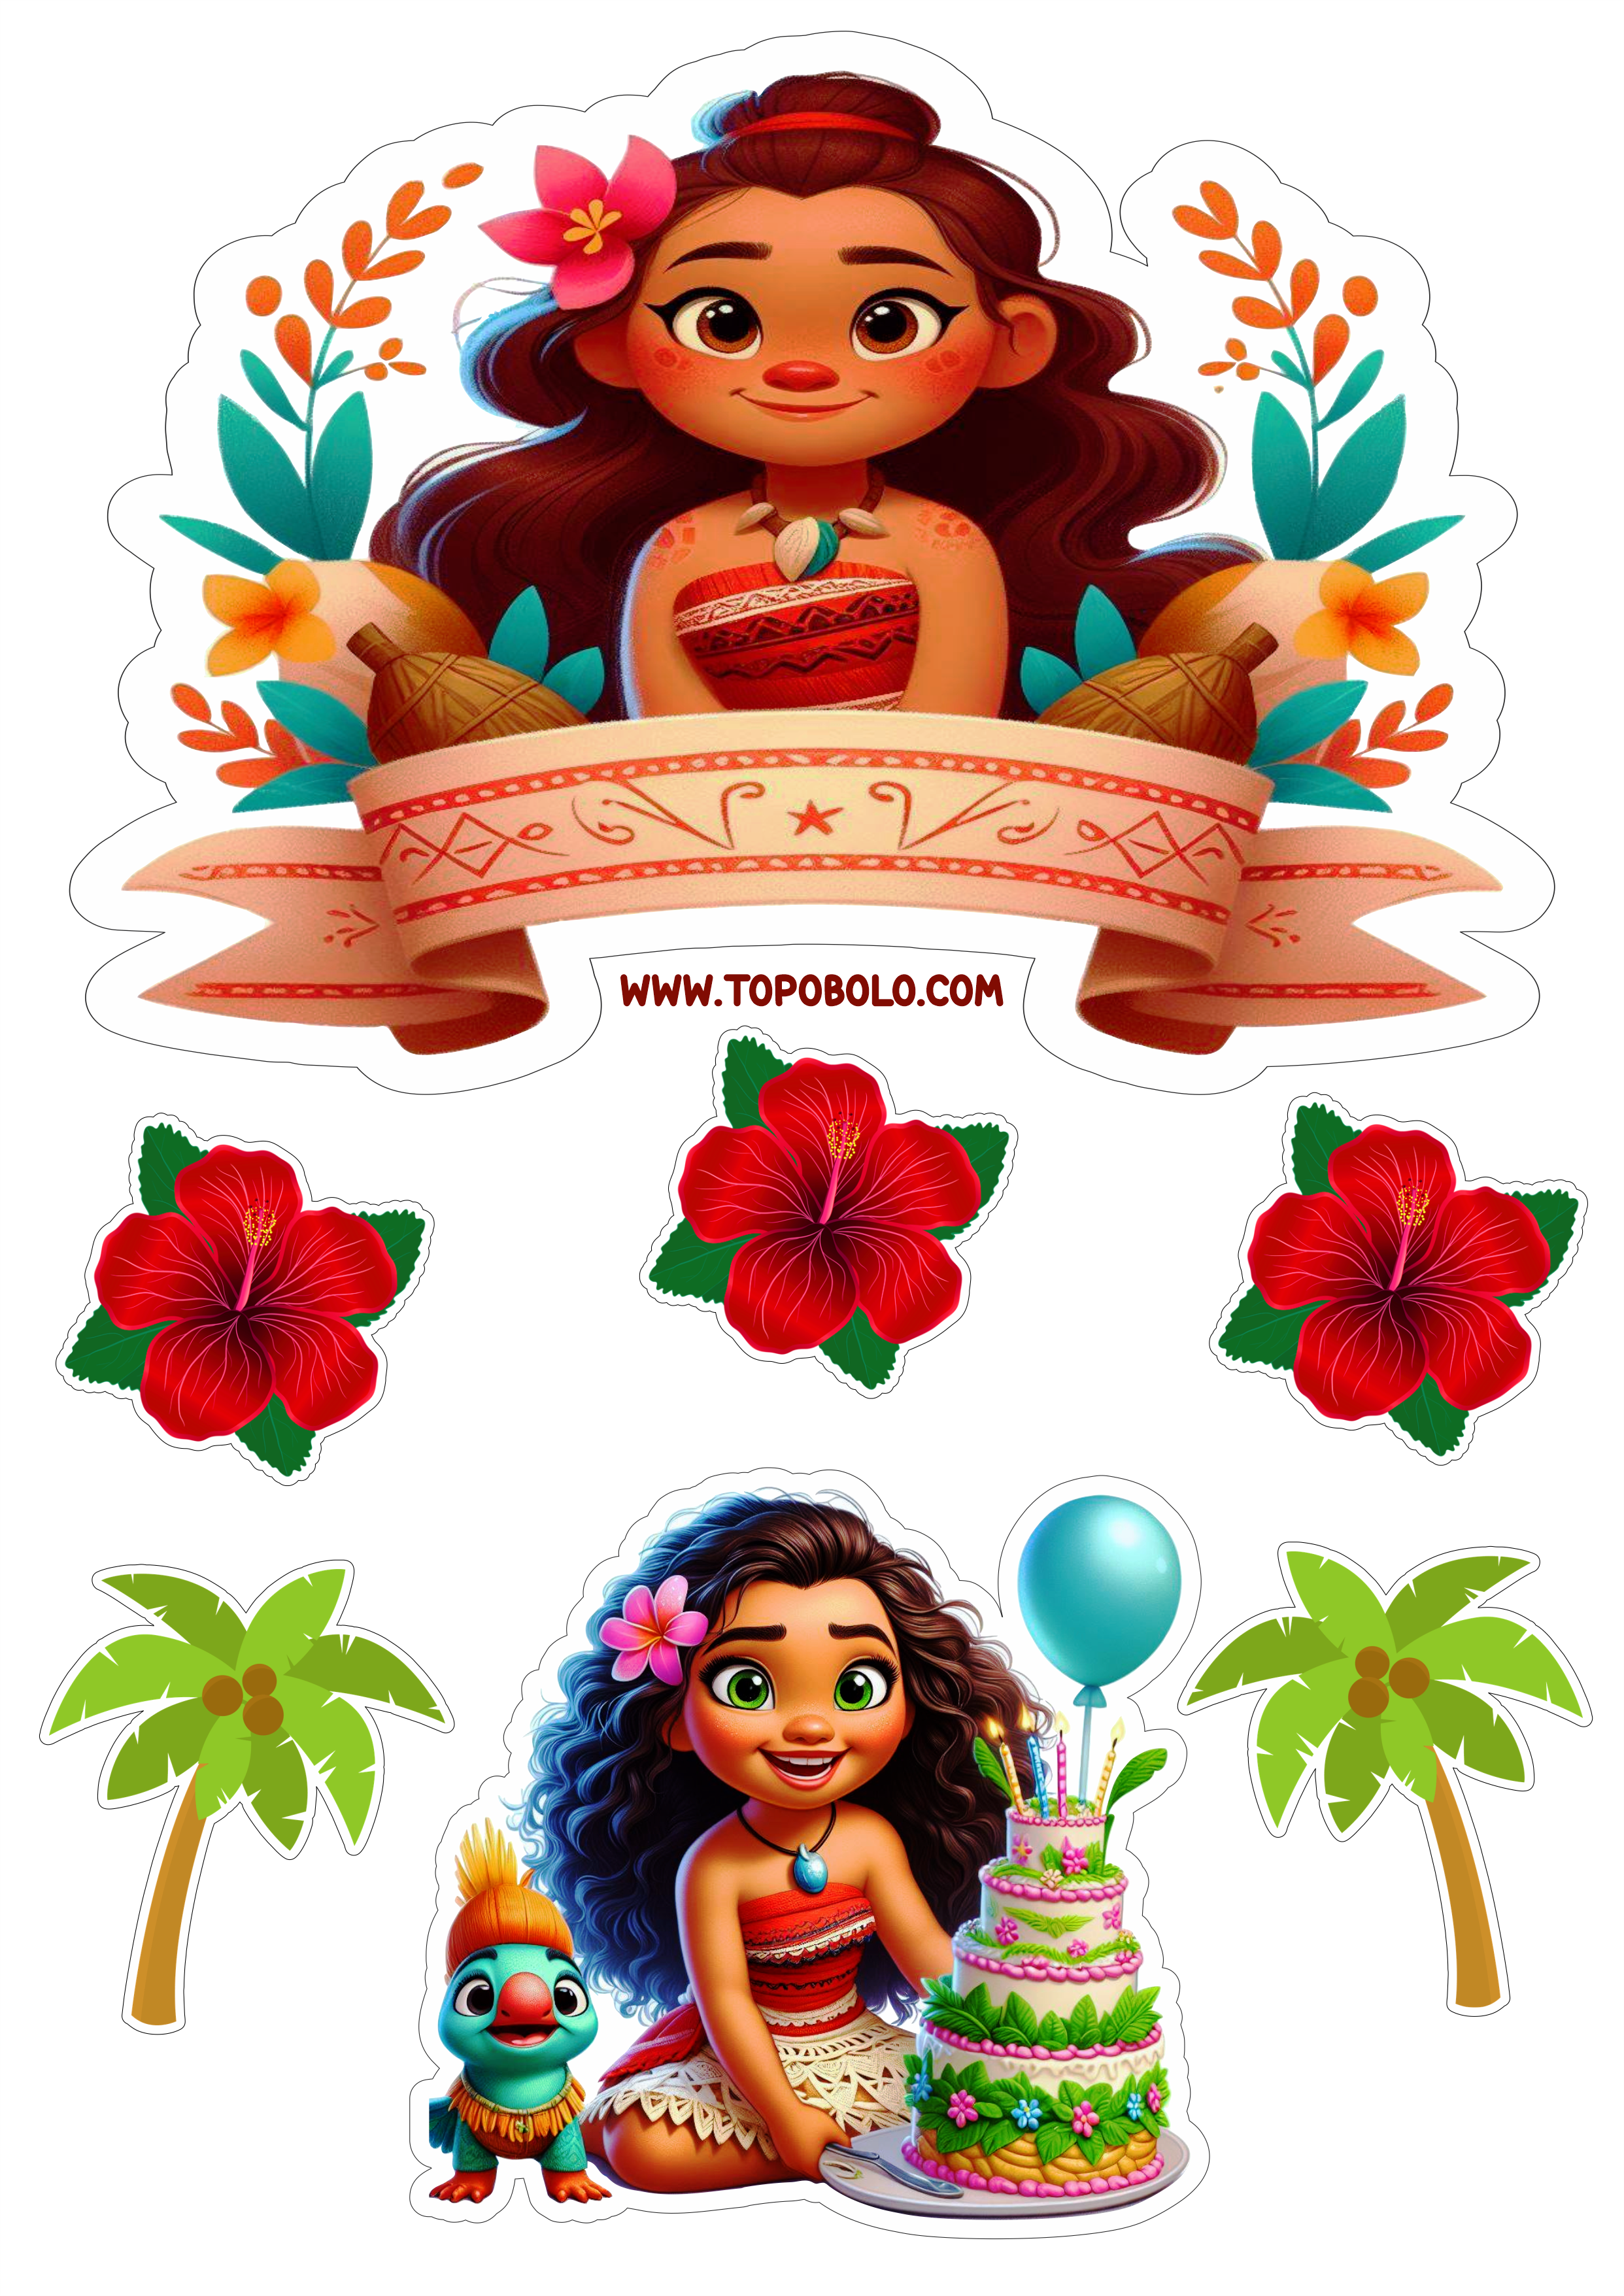 Topo de bolo Moana aniversário infantil decoração de festa papelaria criativa personalizado coqueiro png